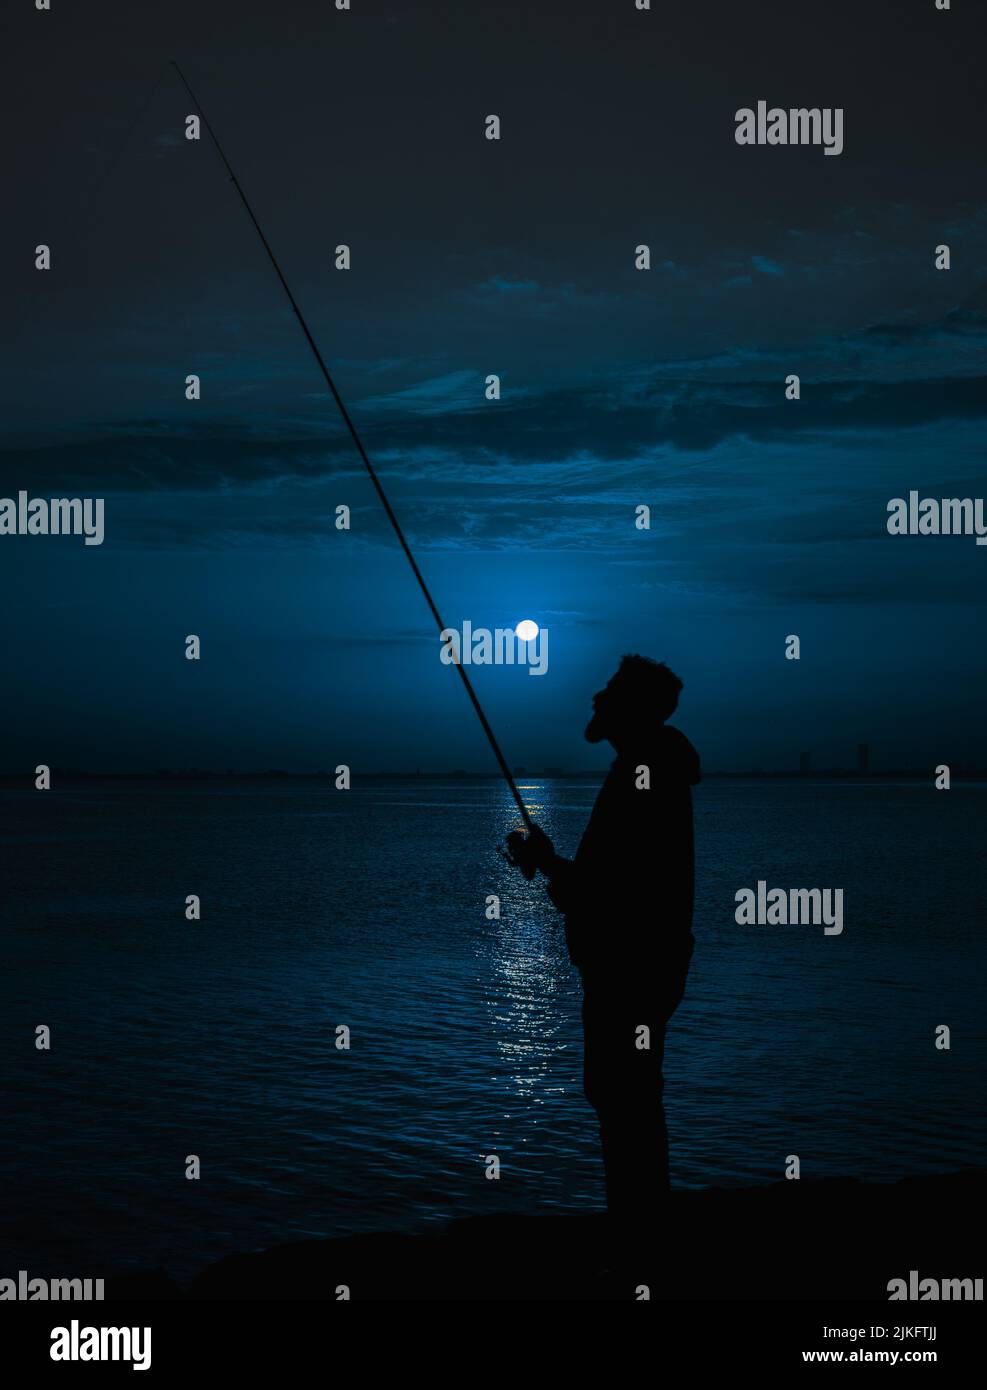 Un homme pêchant sur une rivière sous la lune Banque D'Images